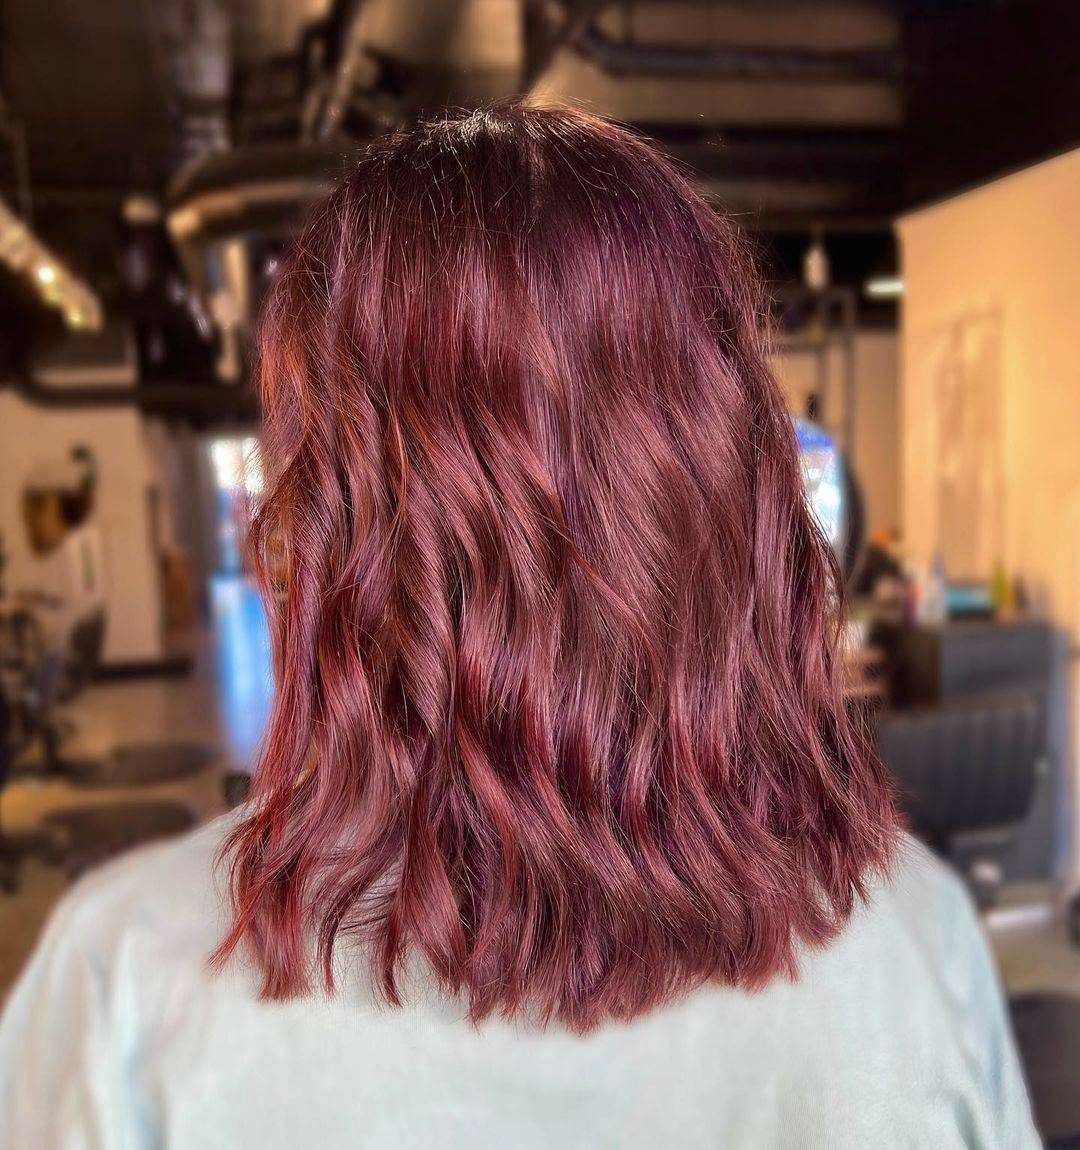 Burgundy hair color 274 burgundy hair color | burgundy hair color for women | burgundy hair color highlights Burgundy Hair Color